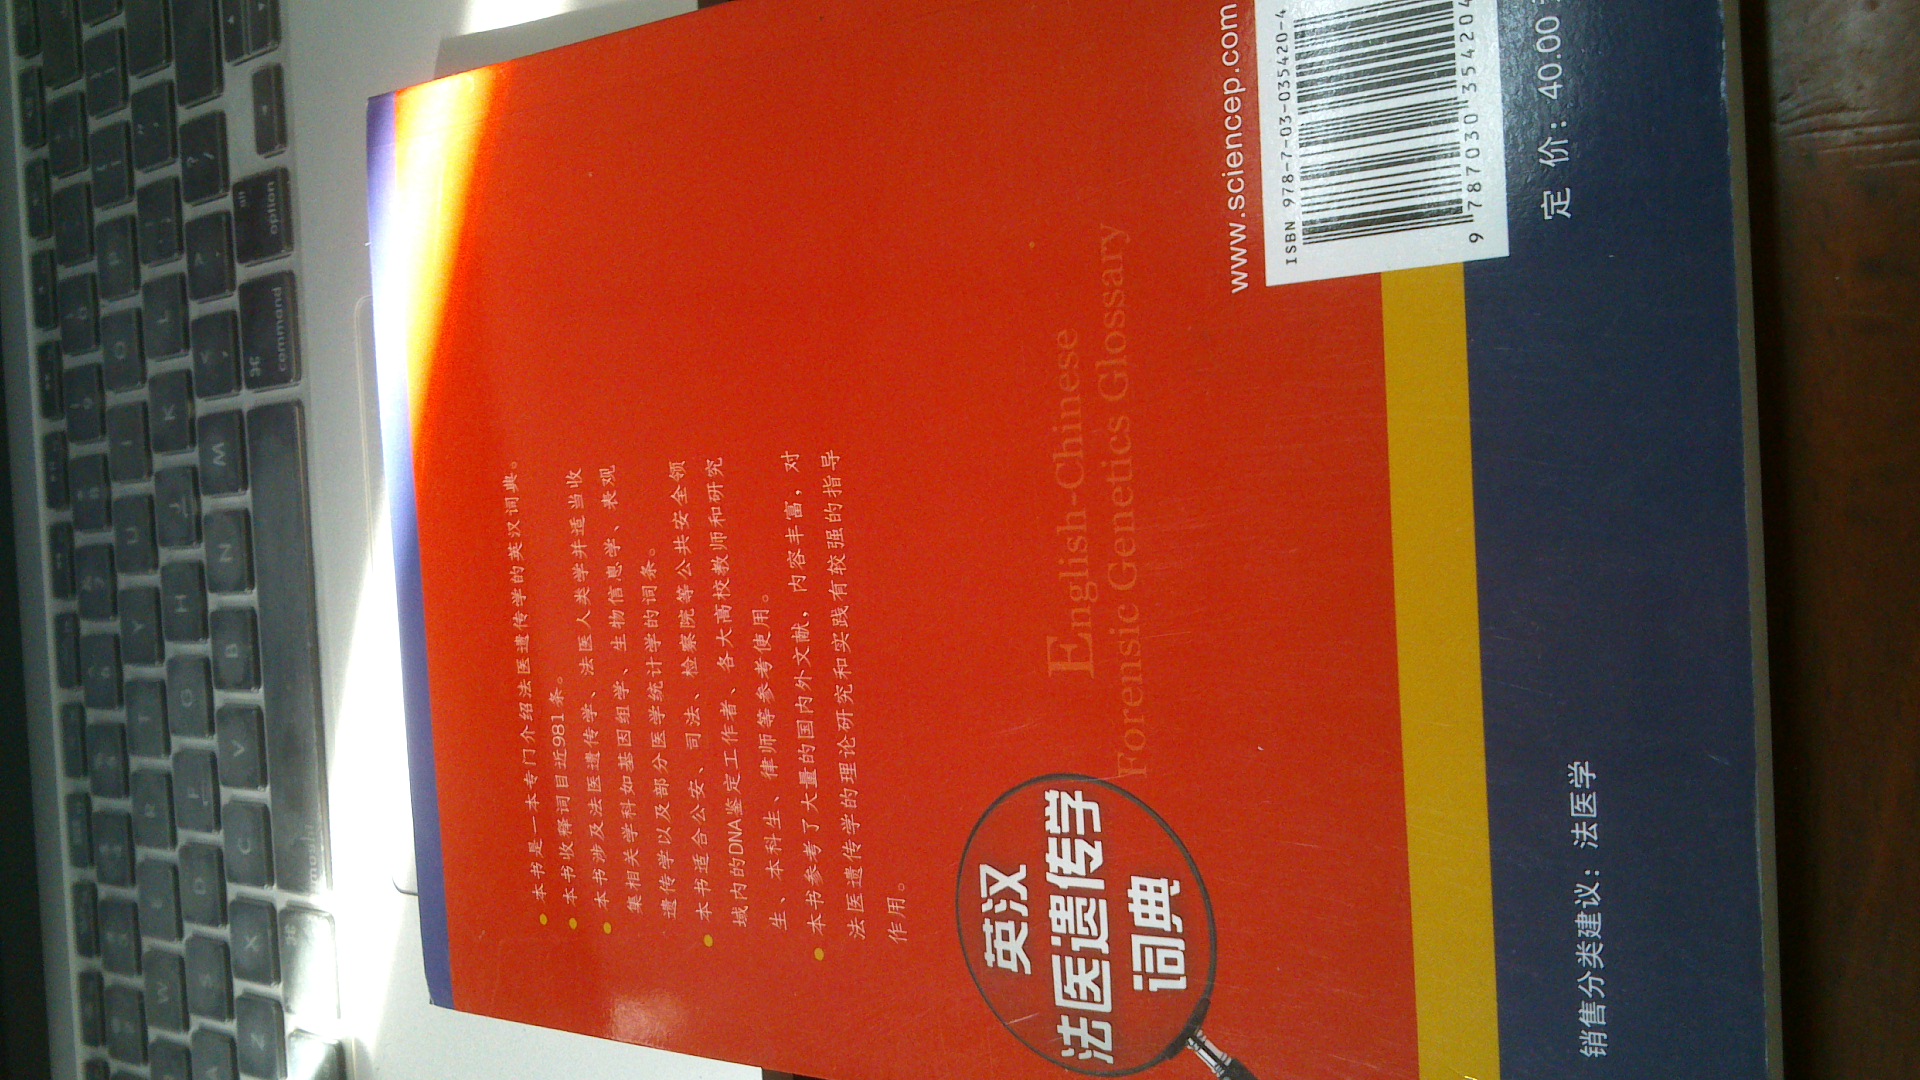 两位老师编的，拜读一下～有点薄，内容选自4本书～相当于名词中英文对照加中文解释～内容基础，对完善法医遗传学基础学习很有帮助～